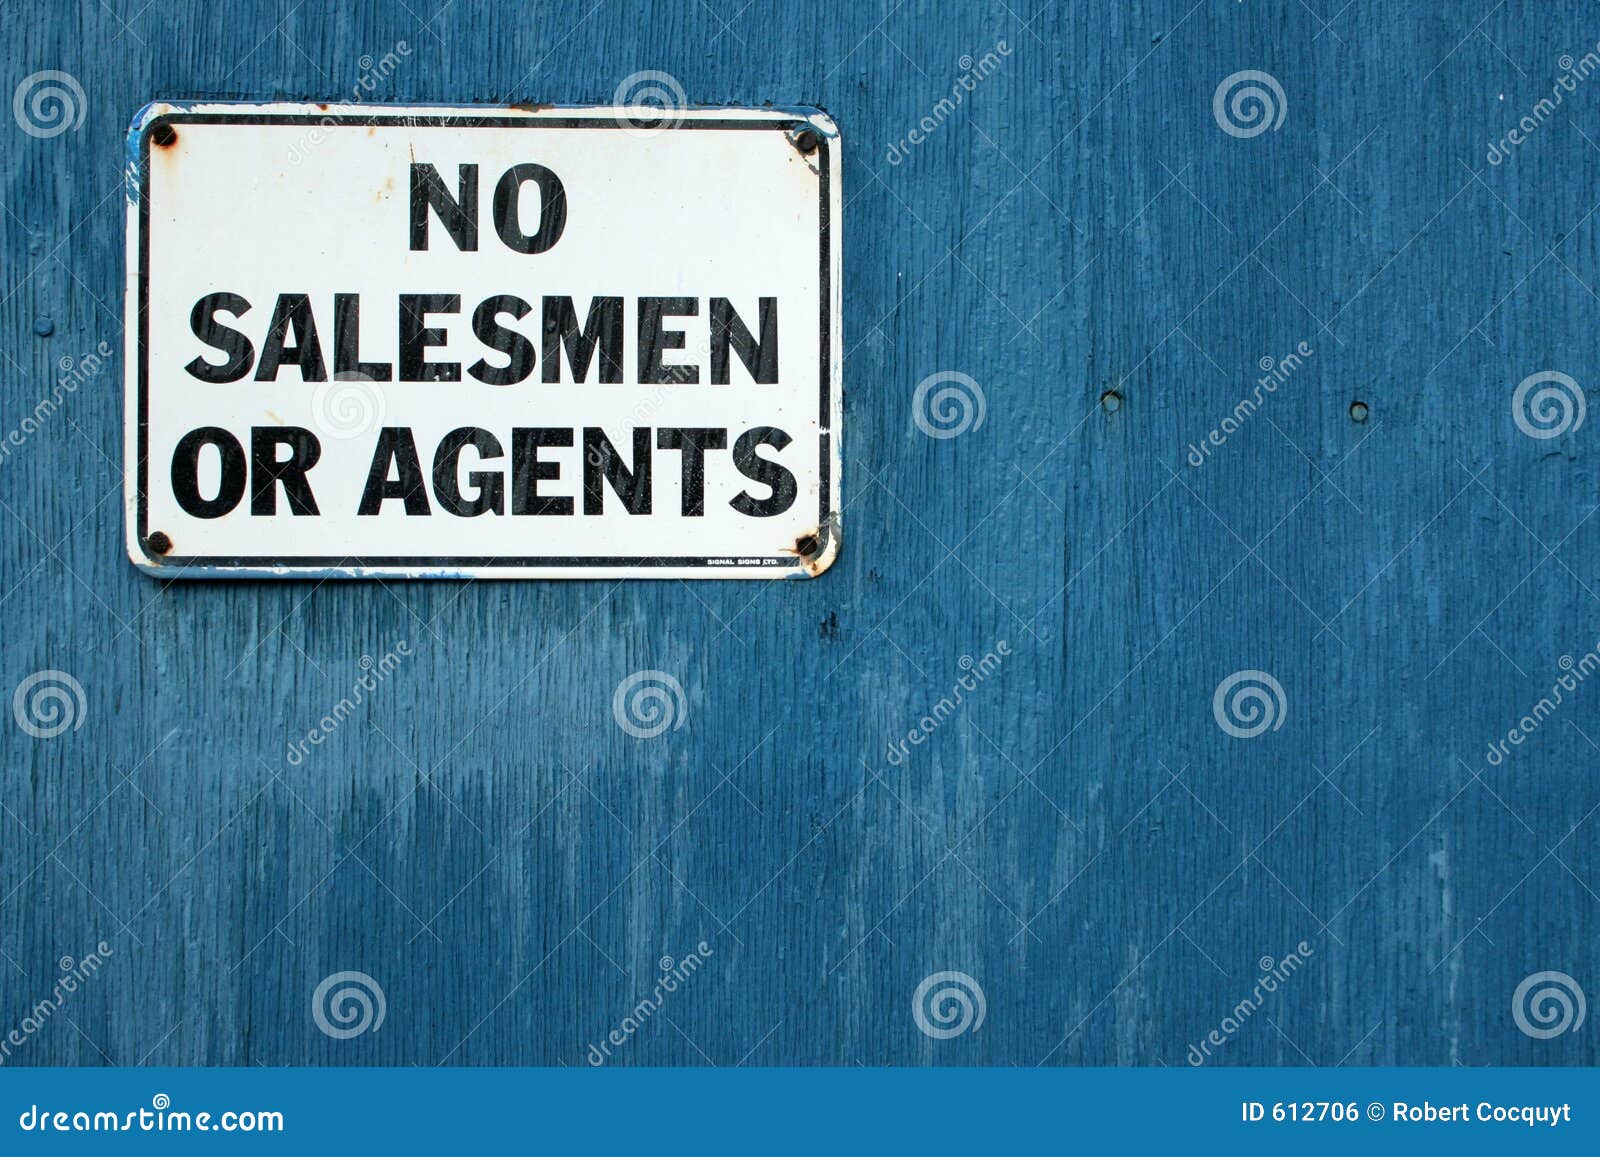 no salesmen 2